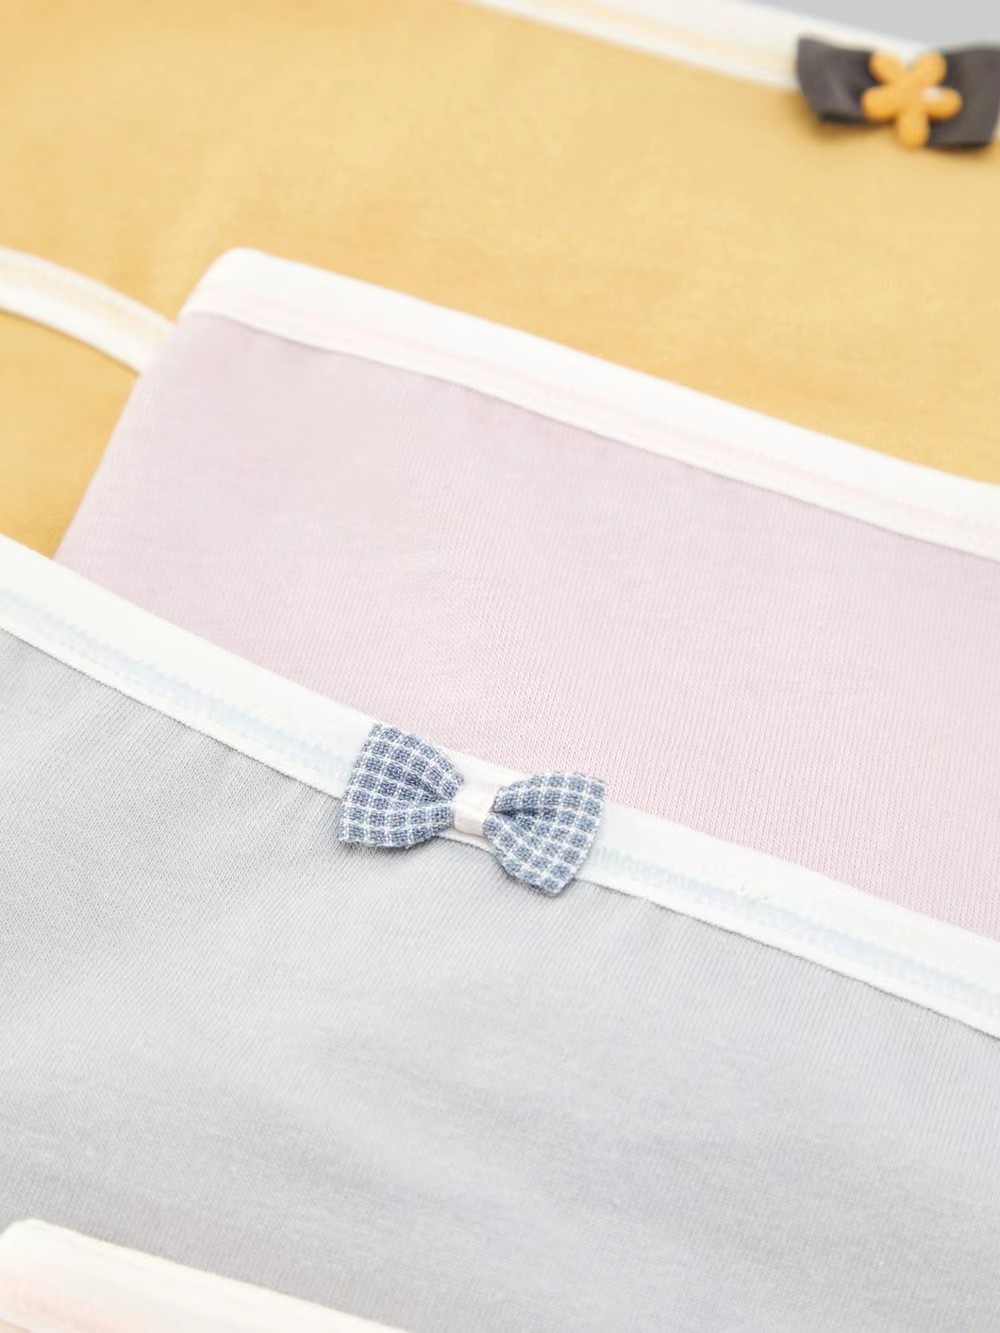 5 Pcs Cute Bow Tie Briefs, Soft & Comfy Simple Stretch Panties, Women's  Lingerie & Underwear